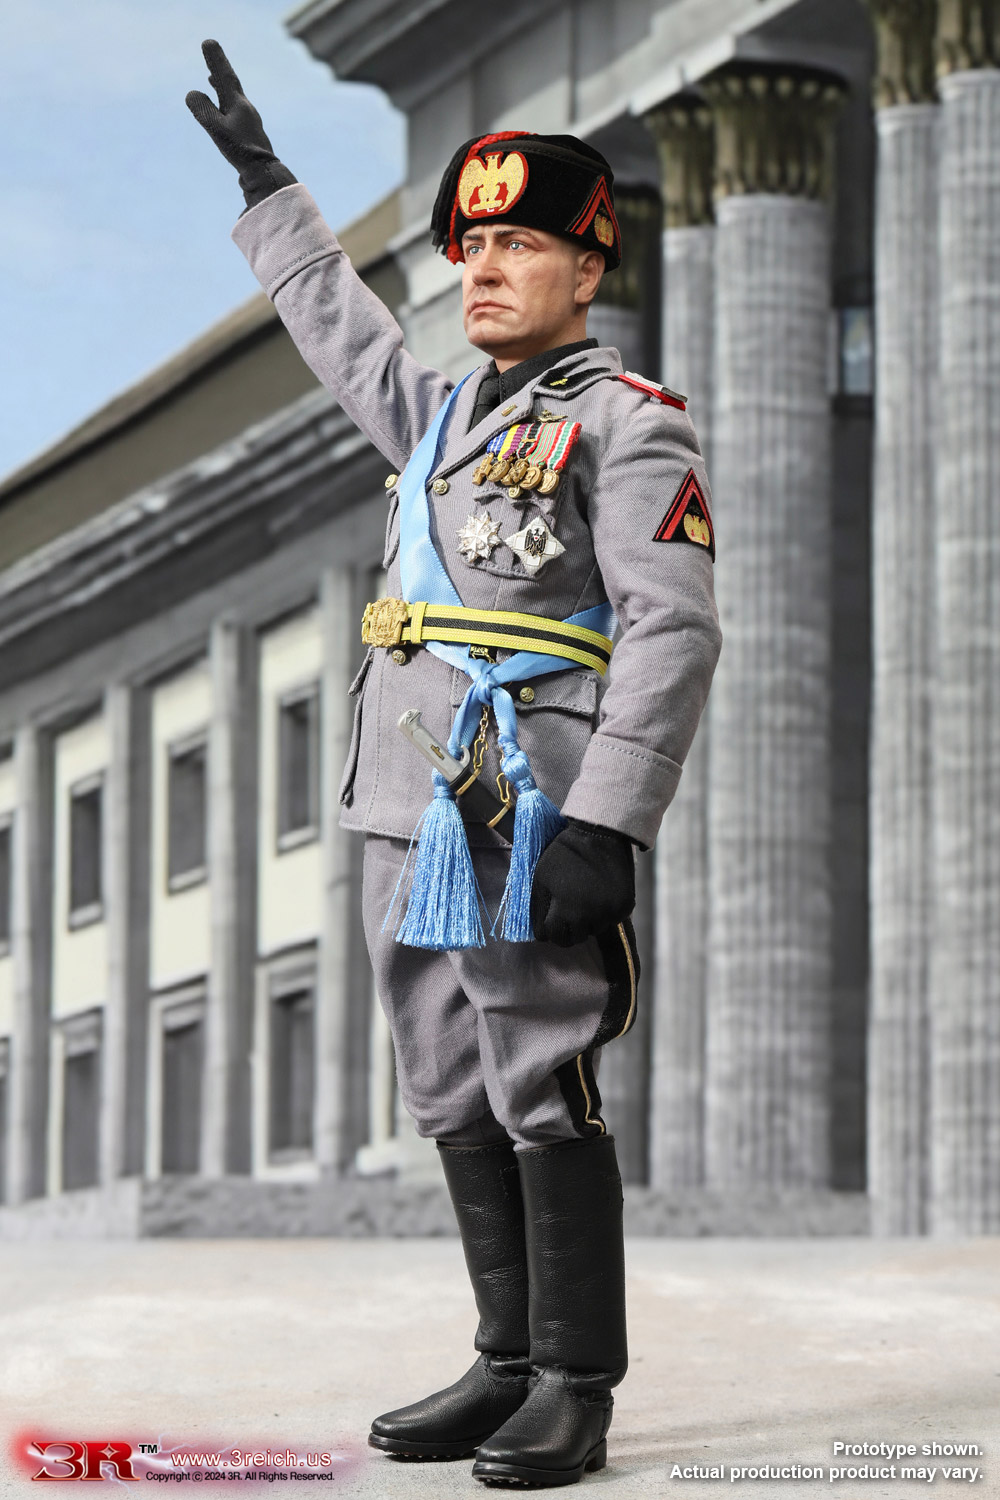 Benito Mussolini - Il Duce of PNF